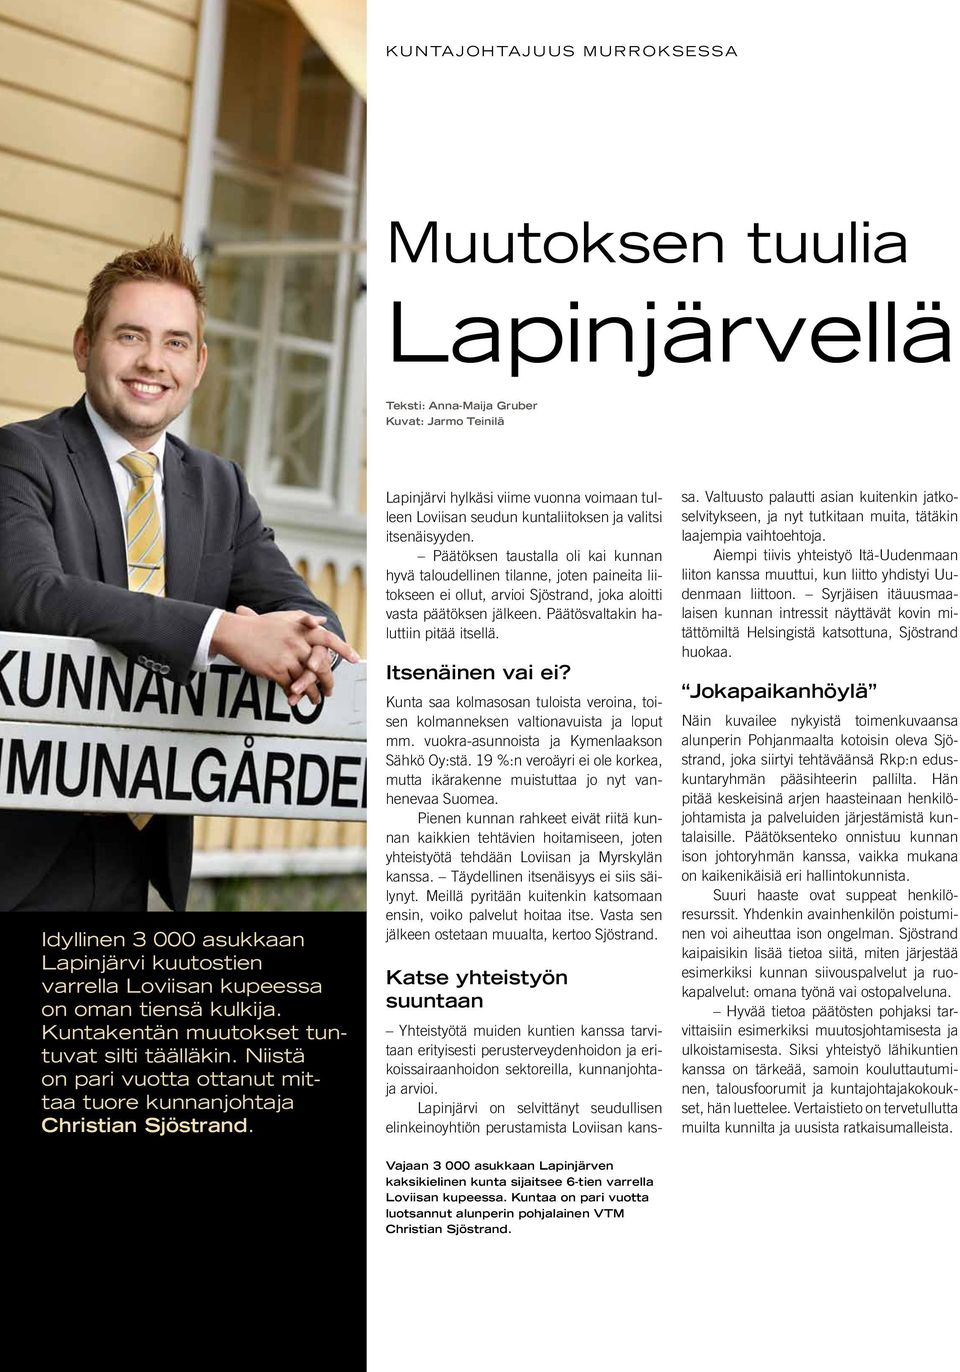 Lapinjärvi hylkäsi viime vuonna voimaan tulleen Loviisan seudun kuntaliitoksen ja valitsi itsenäisyyden.